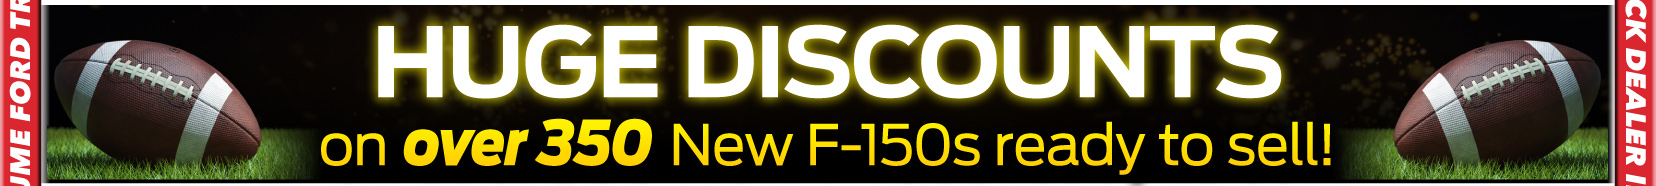 Huge F150 Discounts